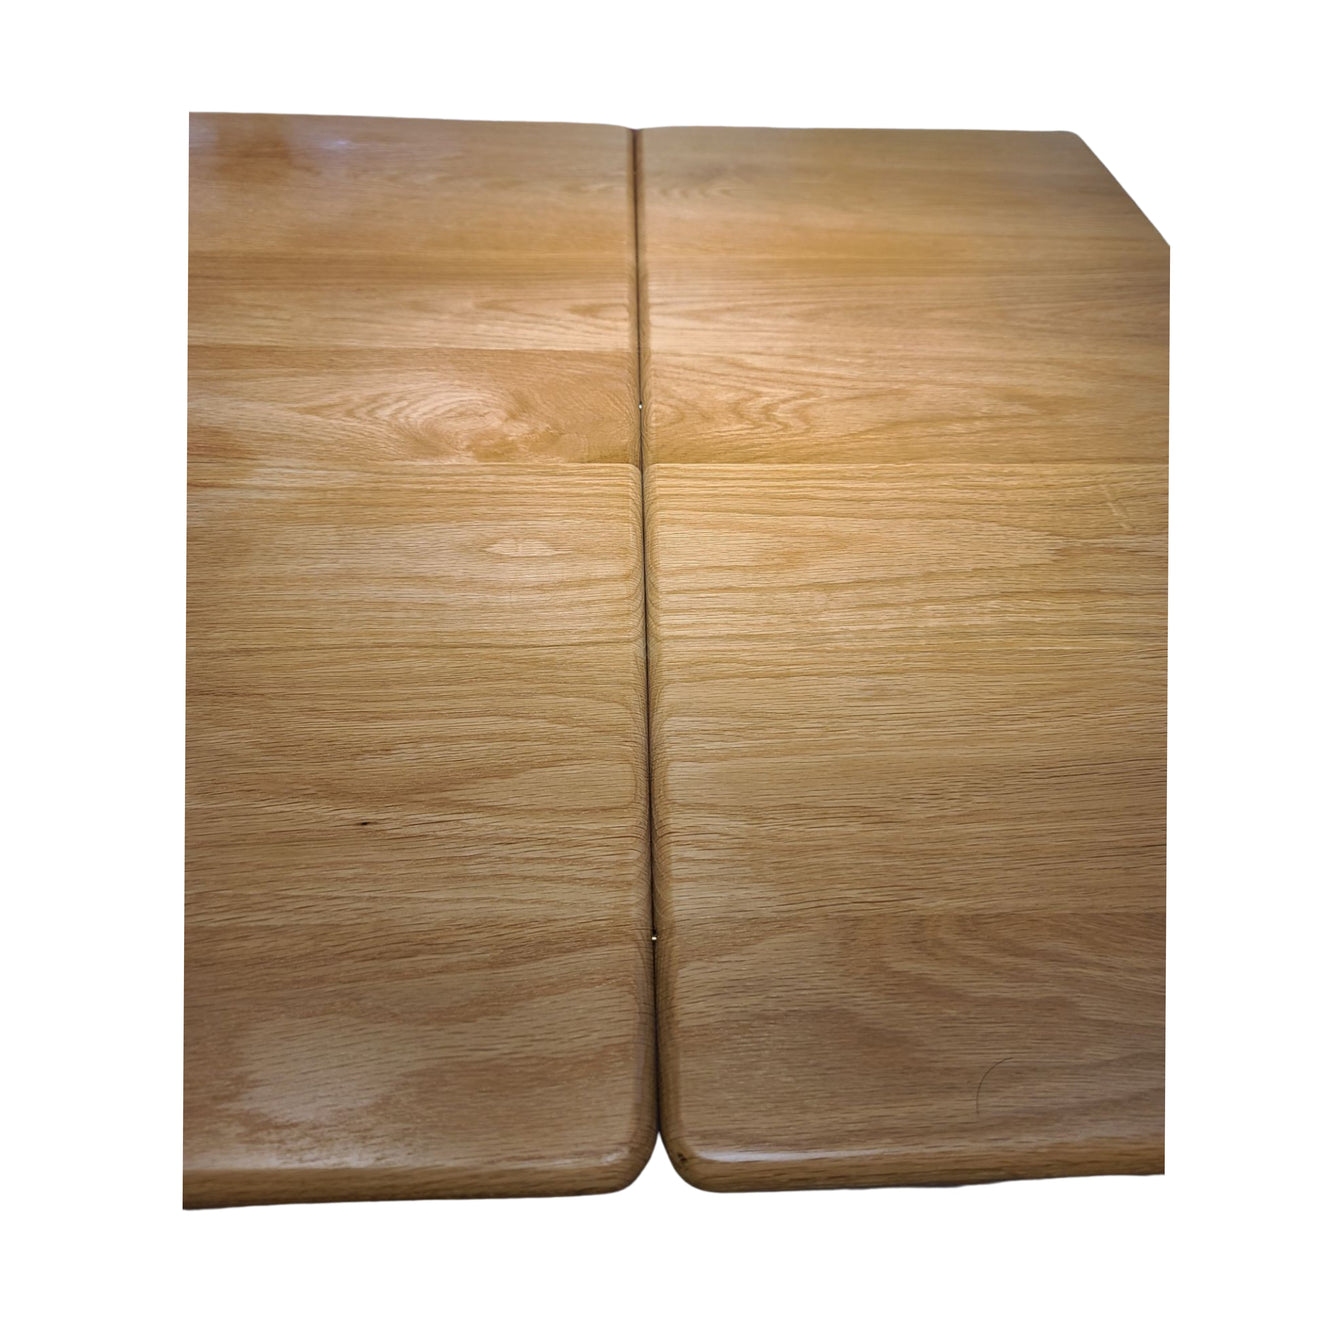 OPAL REX Solid Oak Table